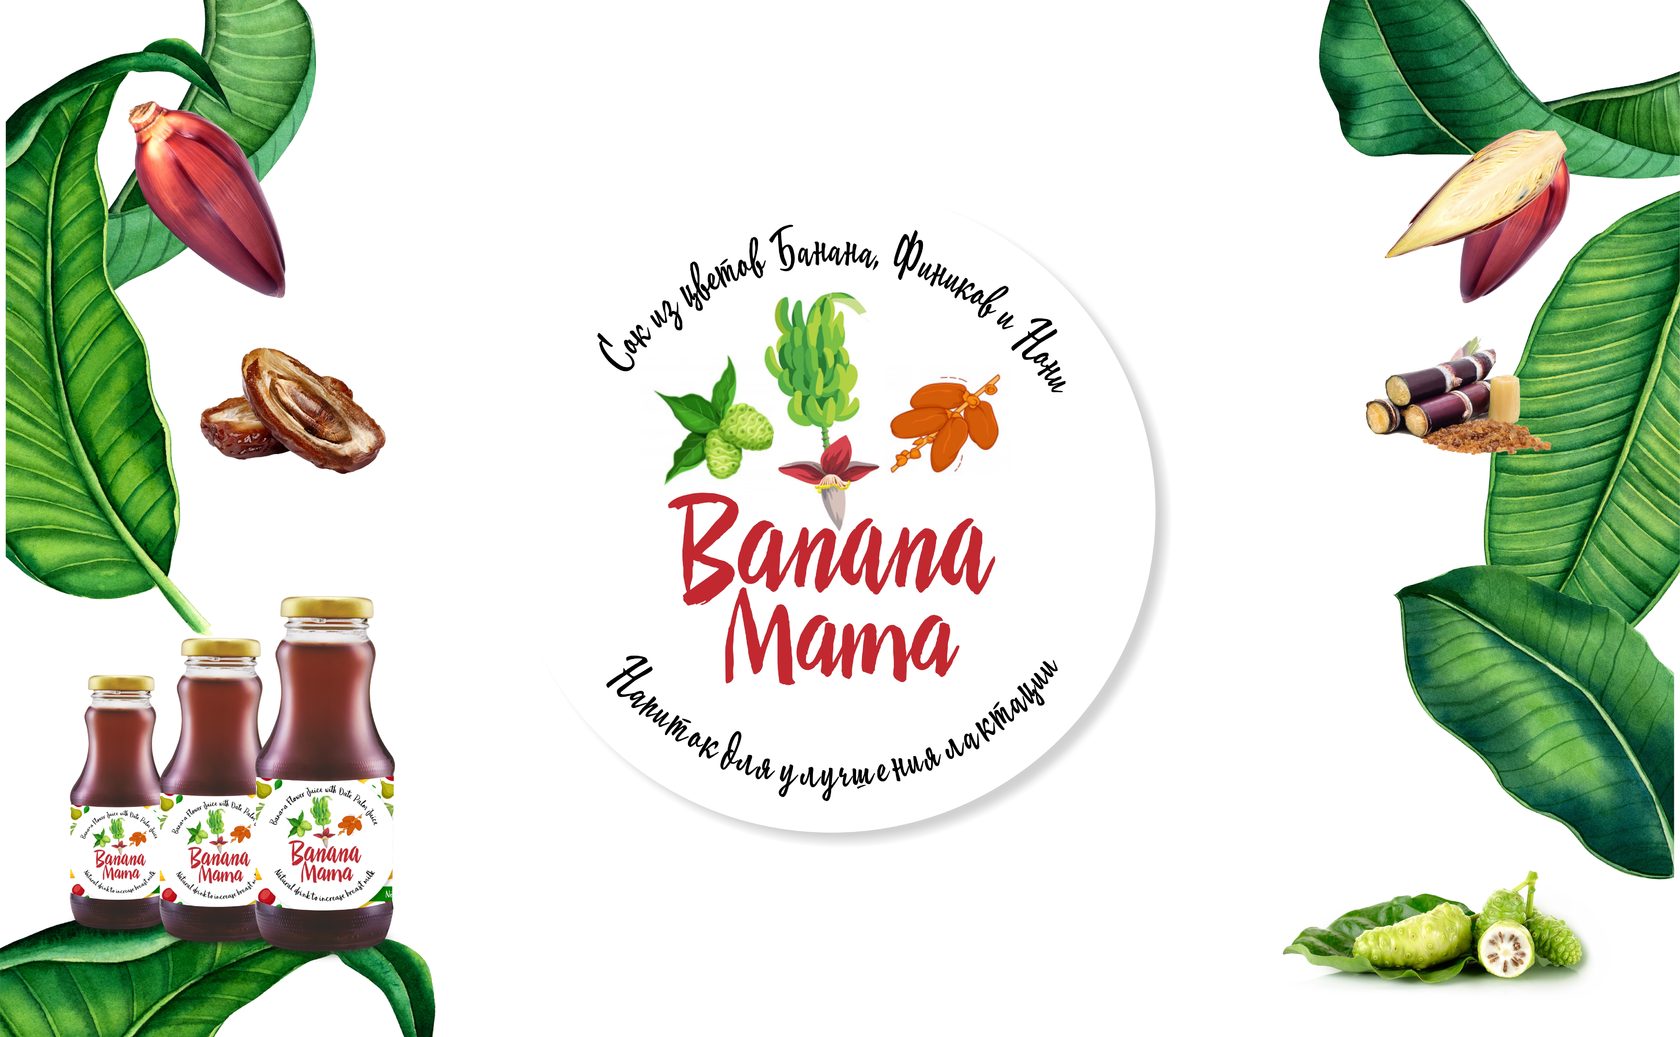 Banana Mama Напиток для улучшения лактации.